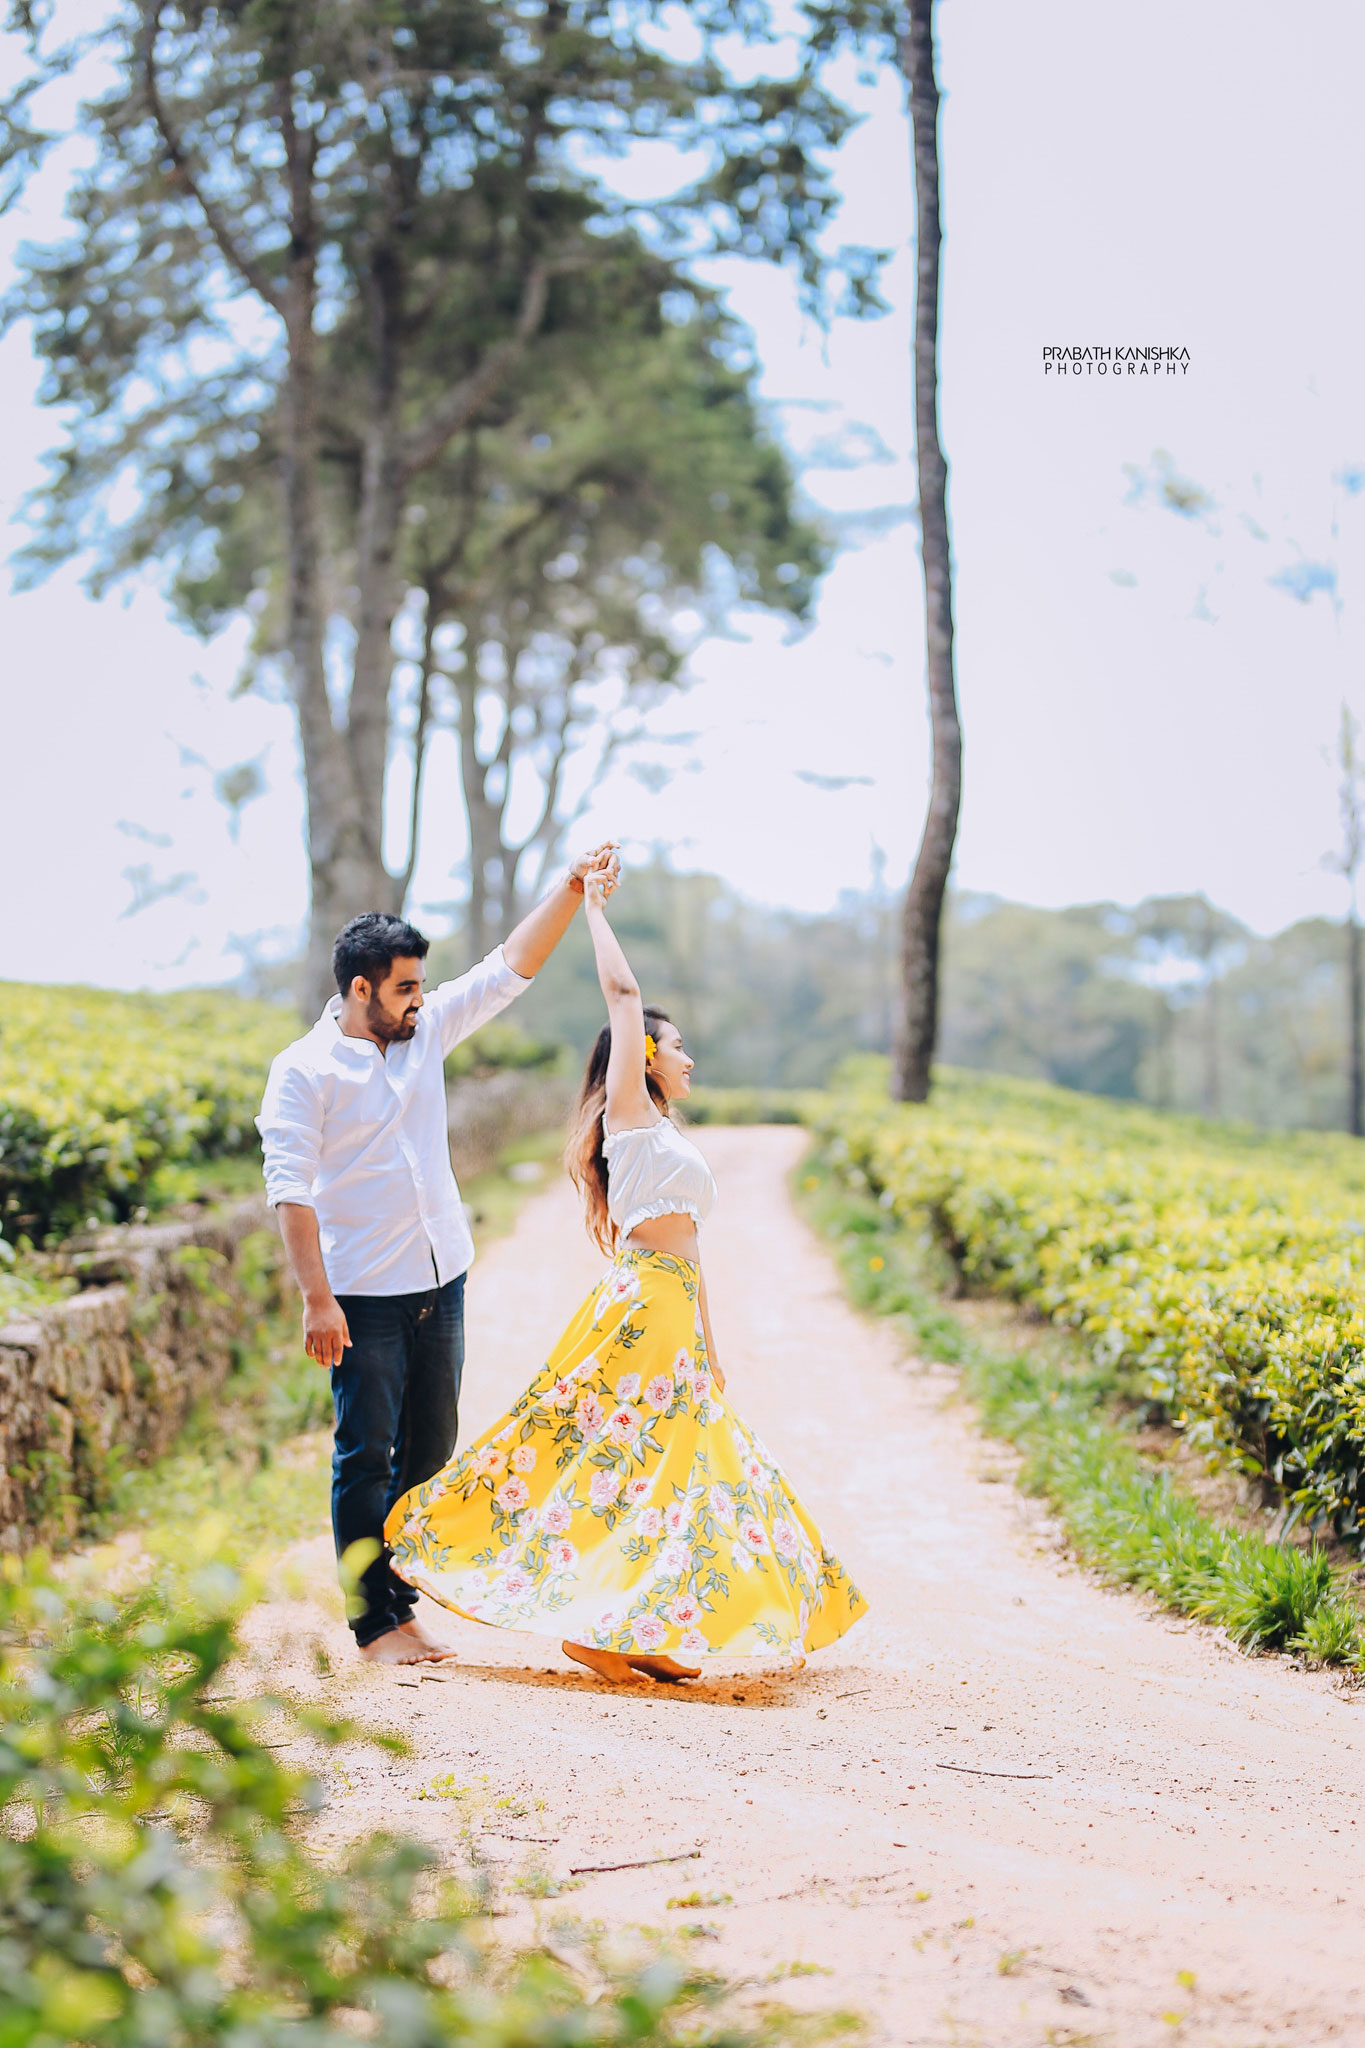 Sachini & Nipuna - Prabath Kanishka Wedding Photography